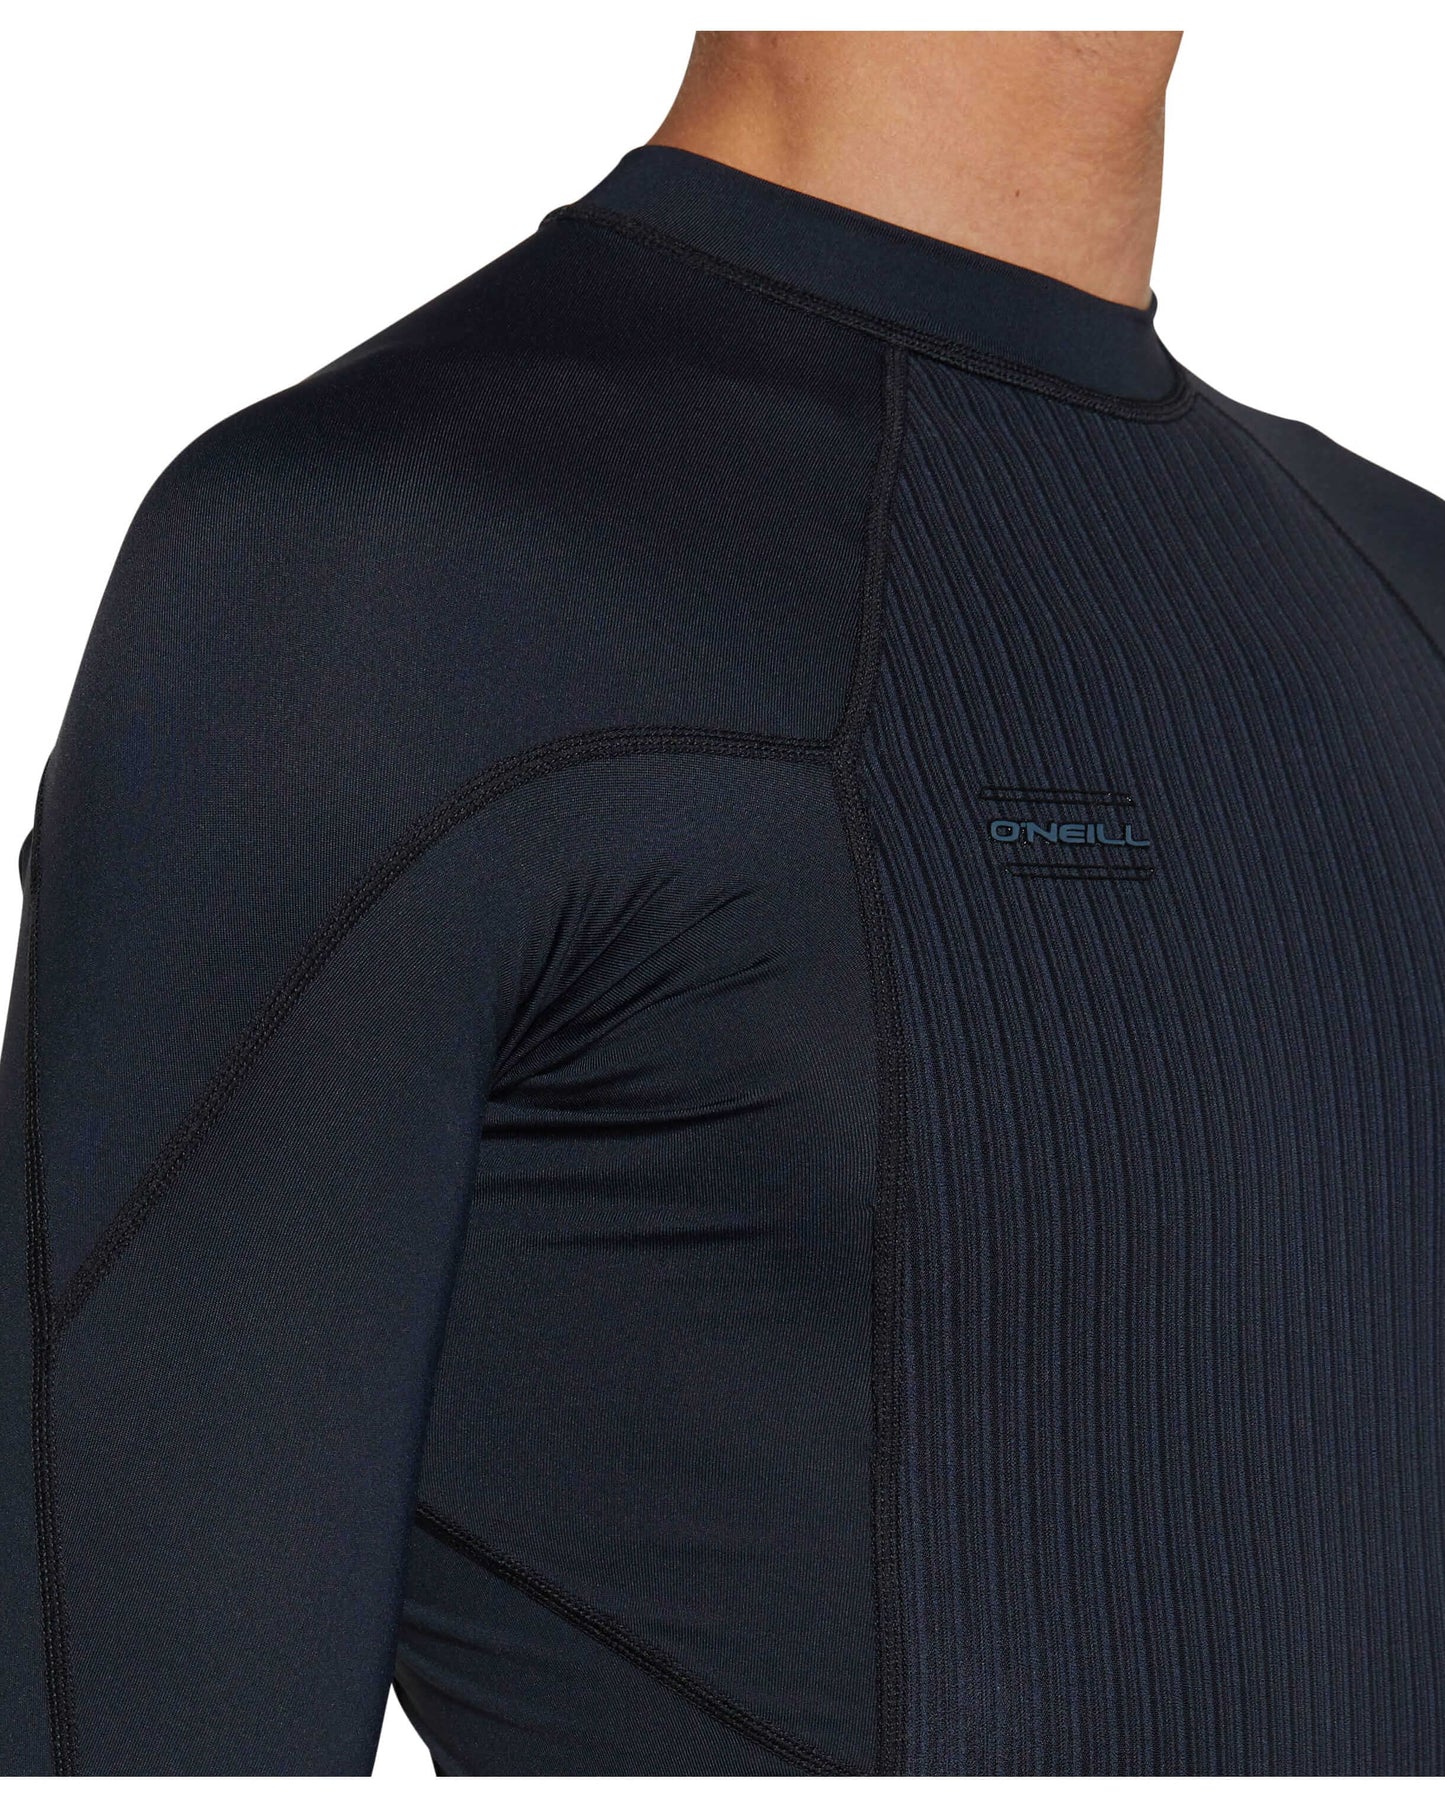 HyperFreak TB3X Neo/Lycra Long Sleeve Wetsuit Jacket - Black